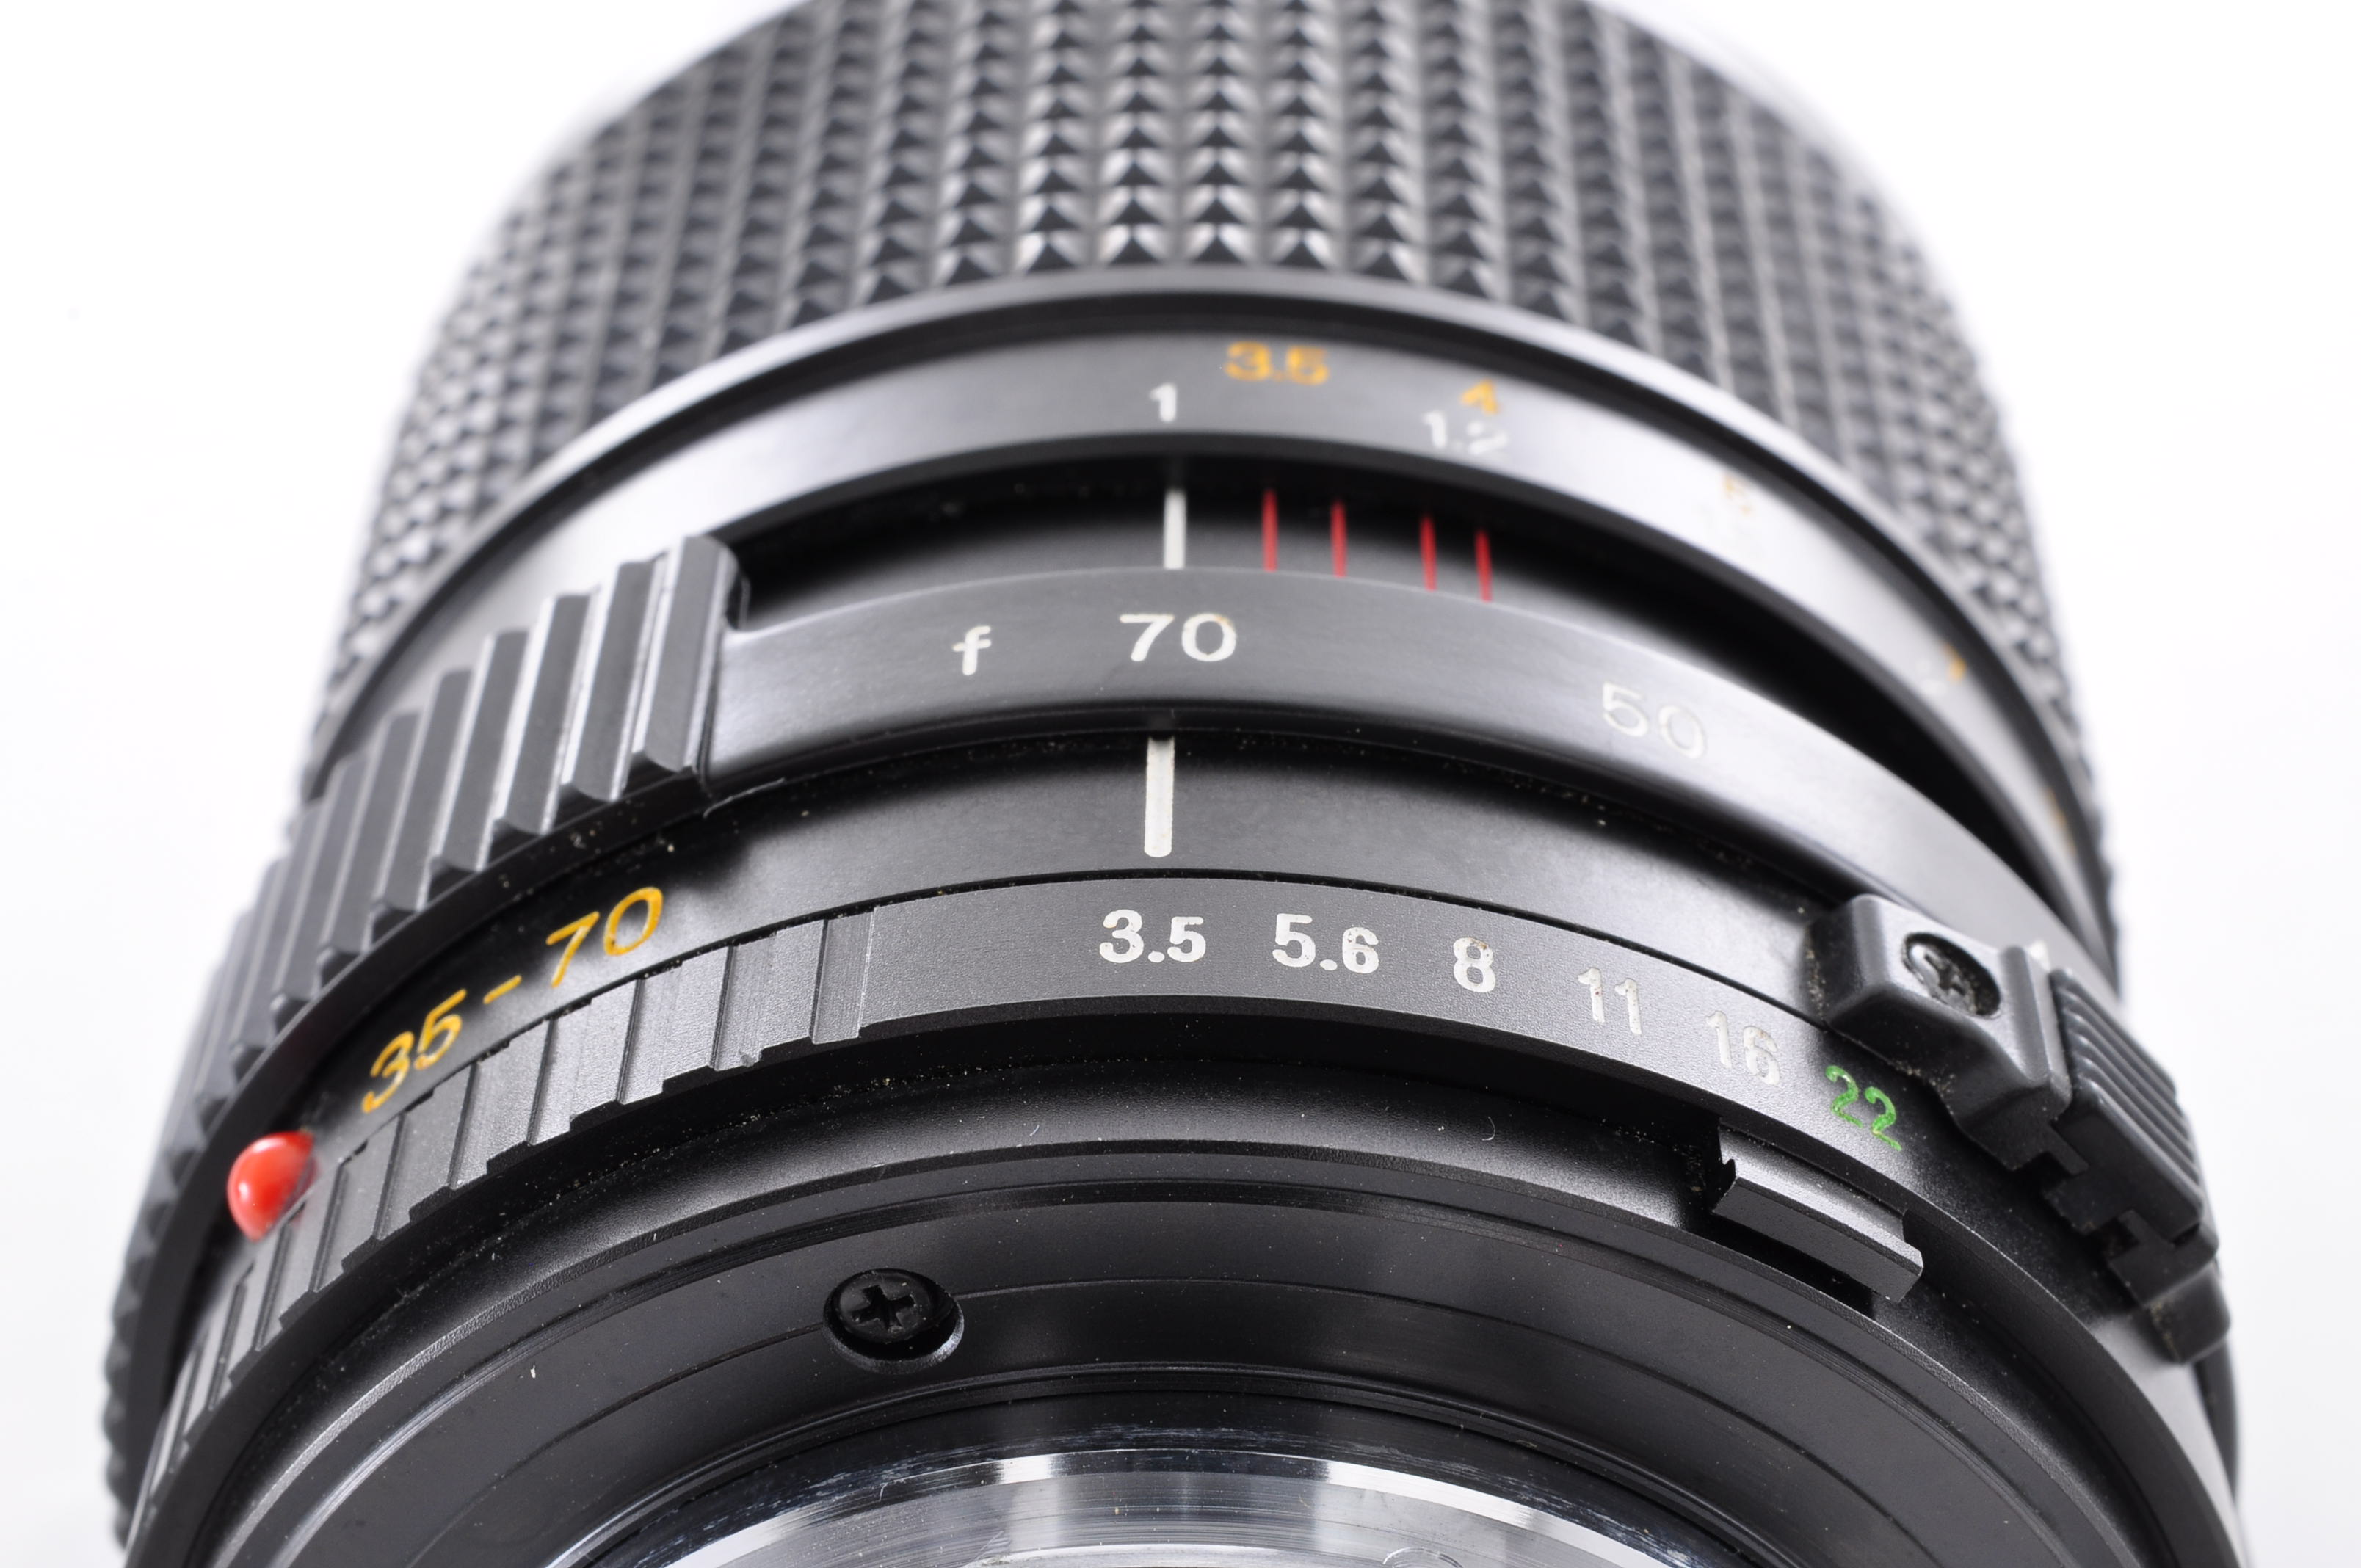 MINOLTA SRT 101 SLR 35mm Film Camera w/MD 35-70mm F3.5 Lens [Excellent] Japan img20